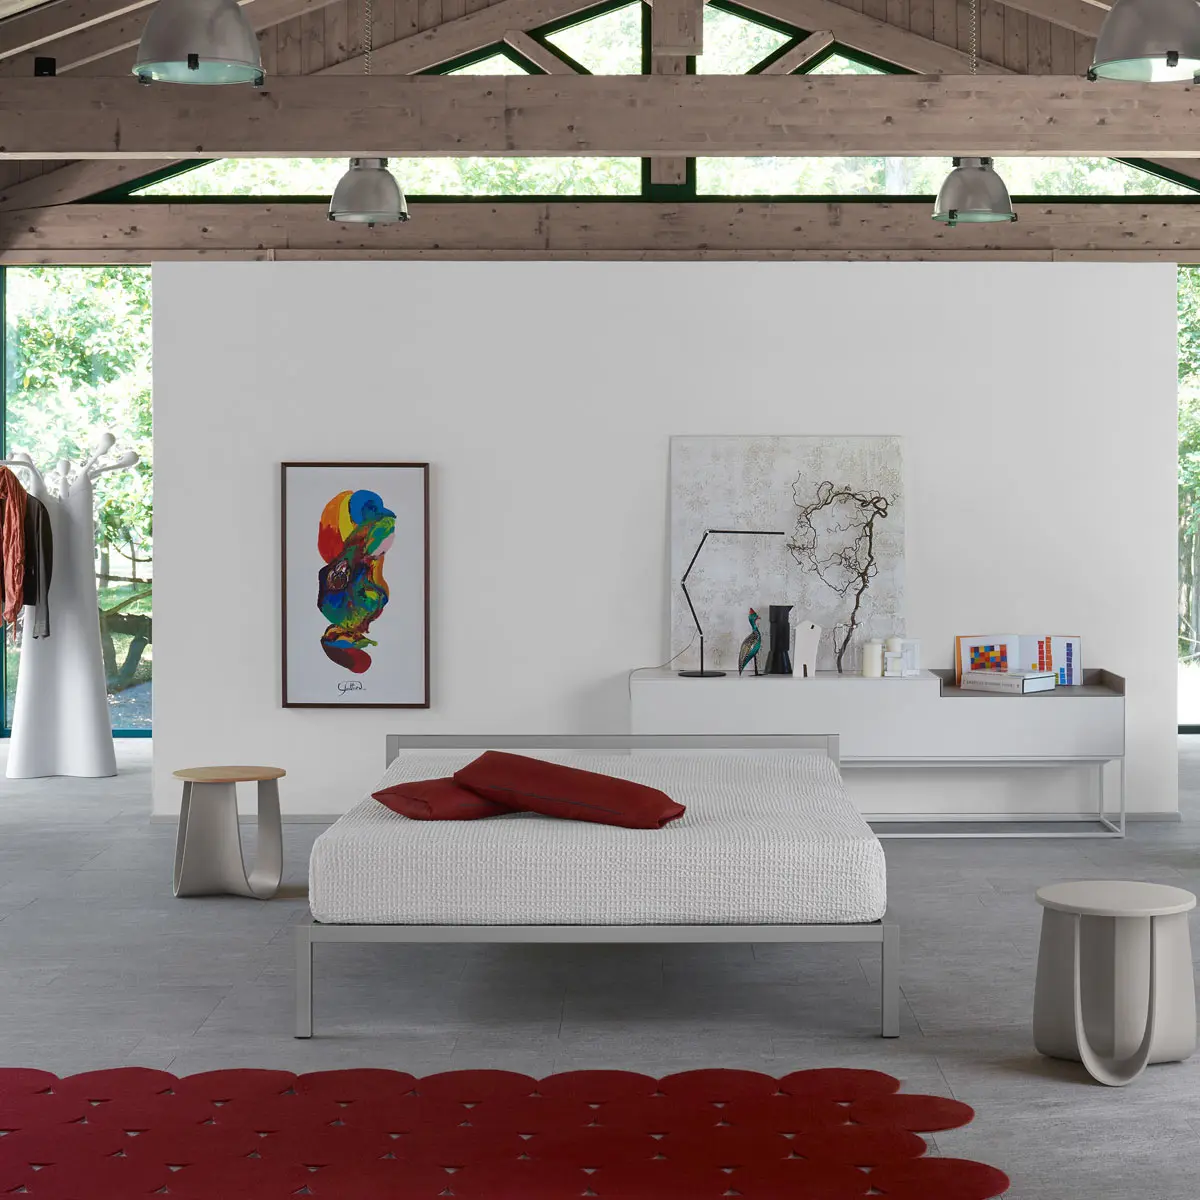 Aluminium Bed Italy ☞ Structure: Matt Painted Red ☞ Dimensions: 210 x 210 cm